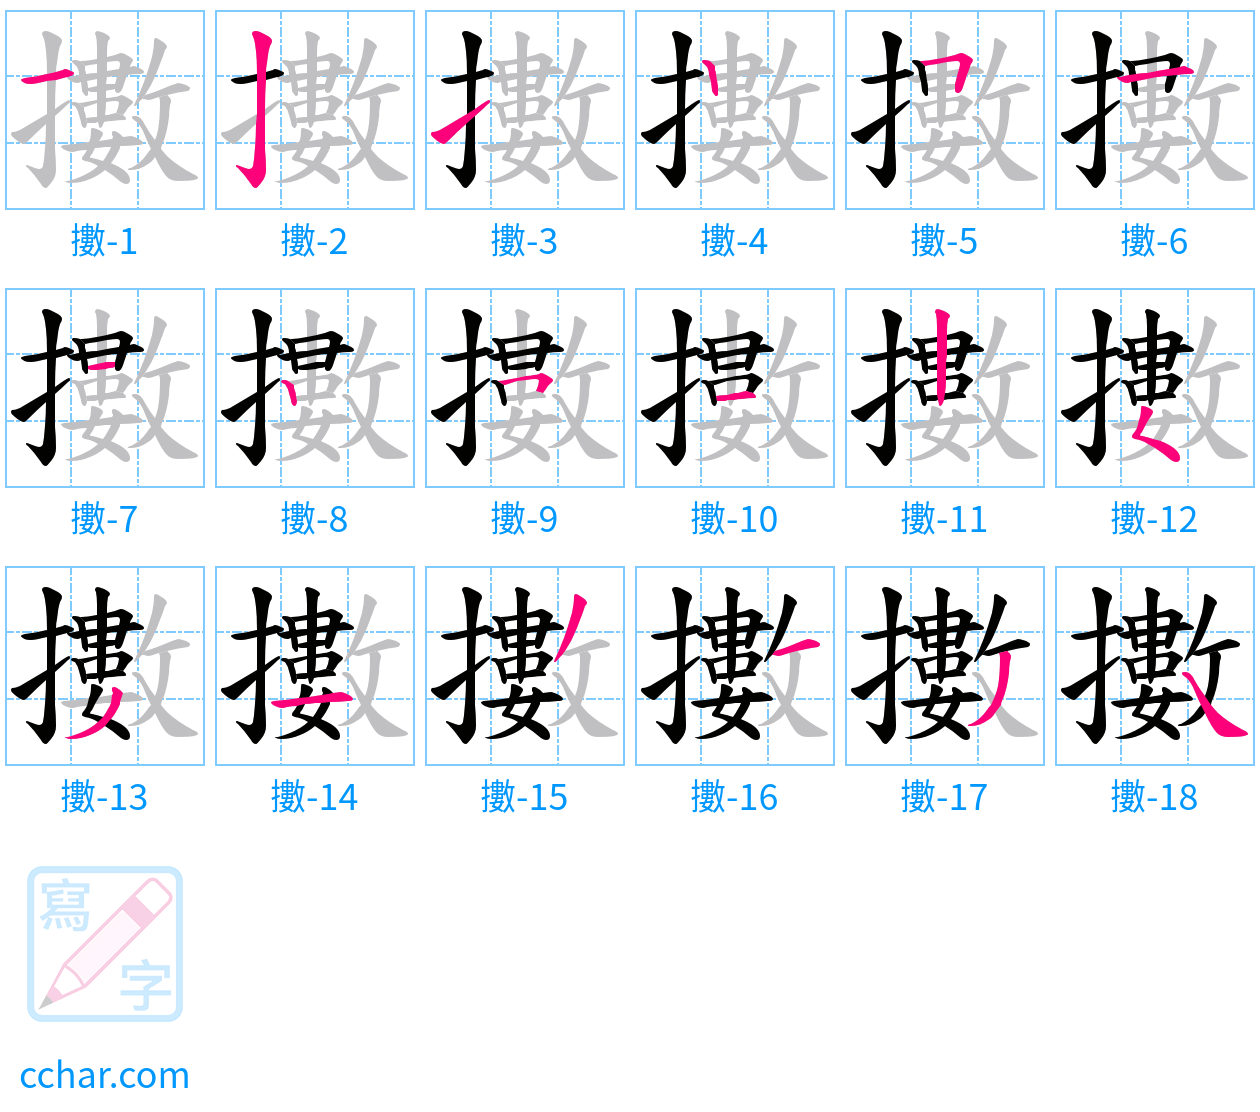 擻 stroke order step-by-step diagram